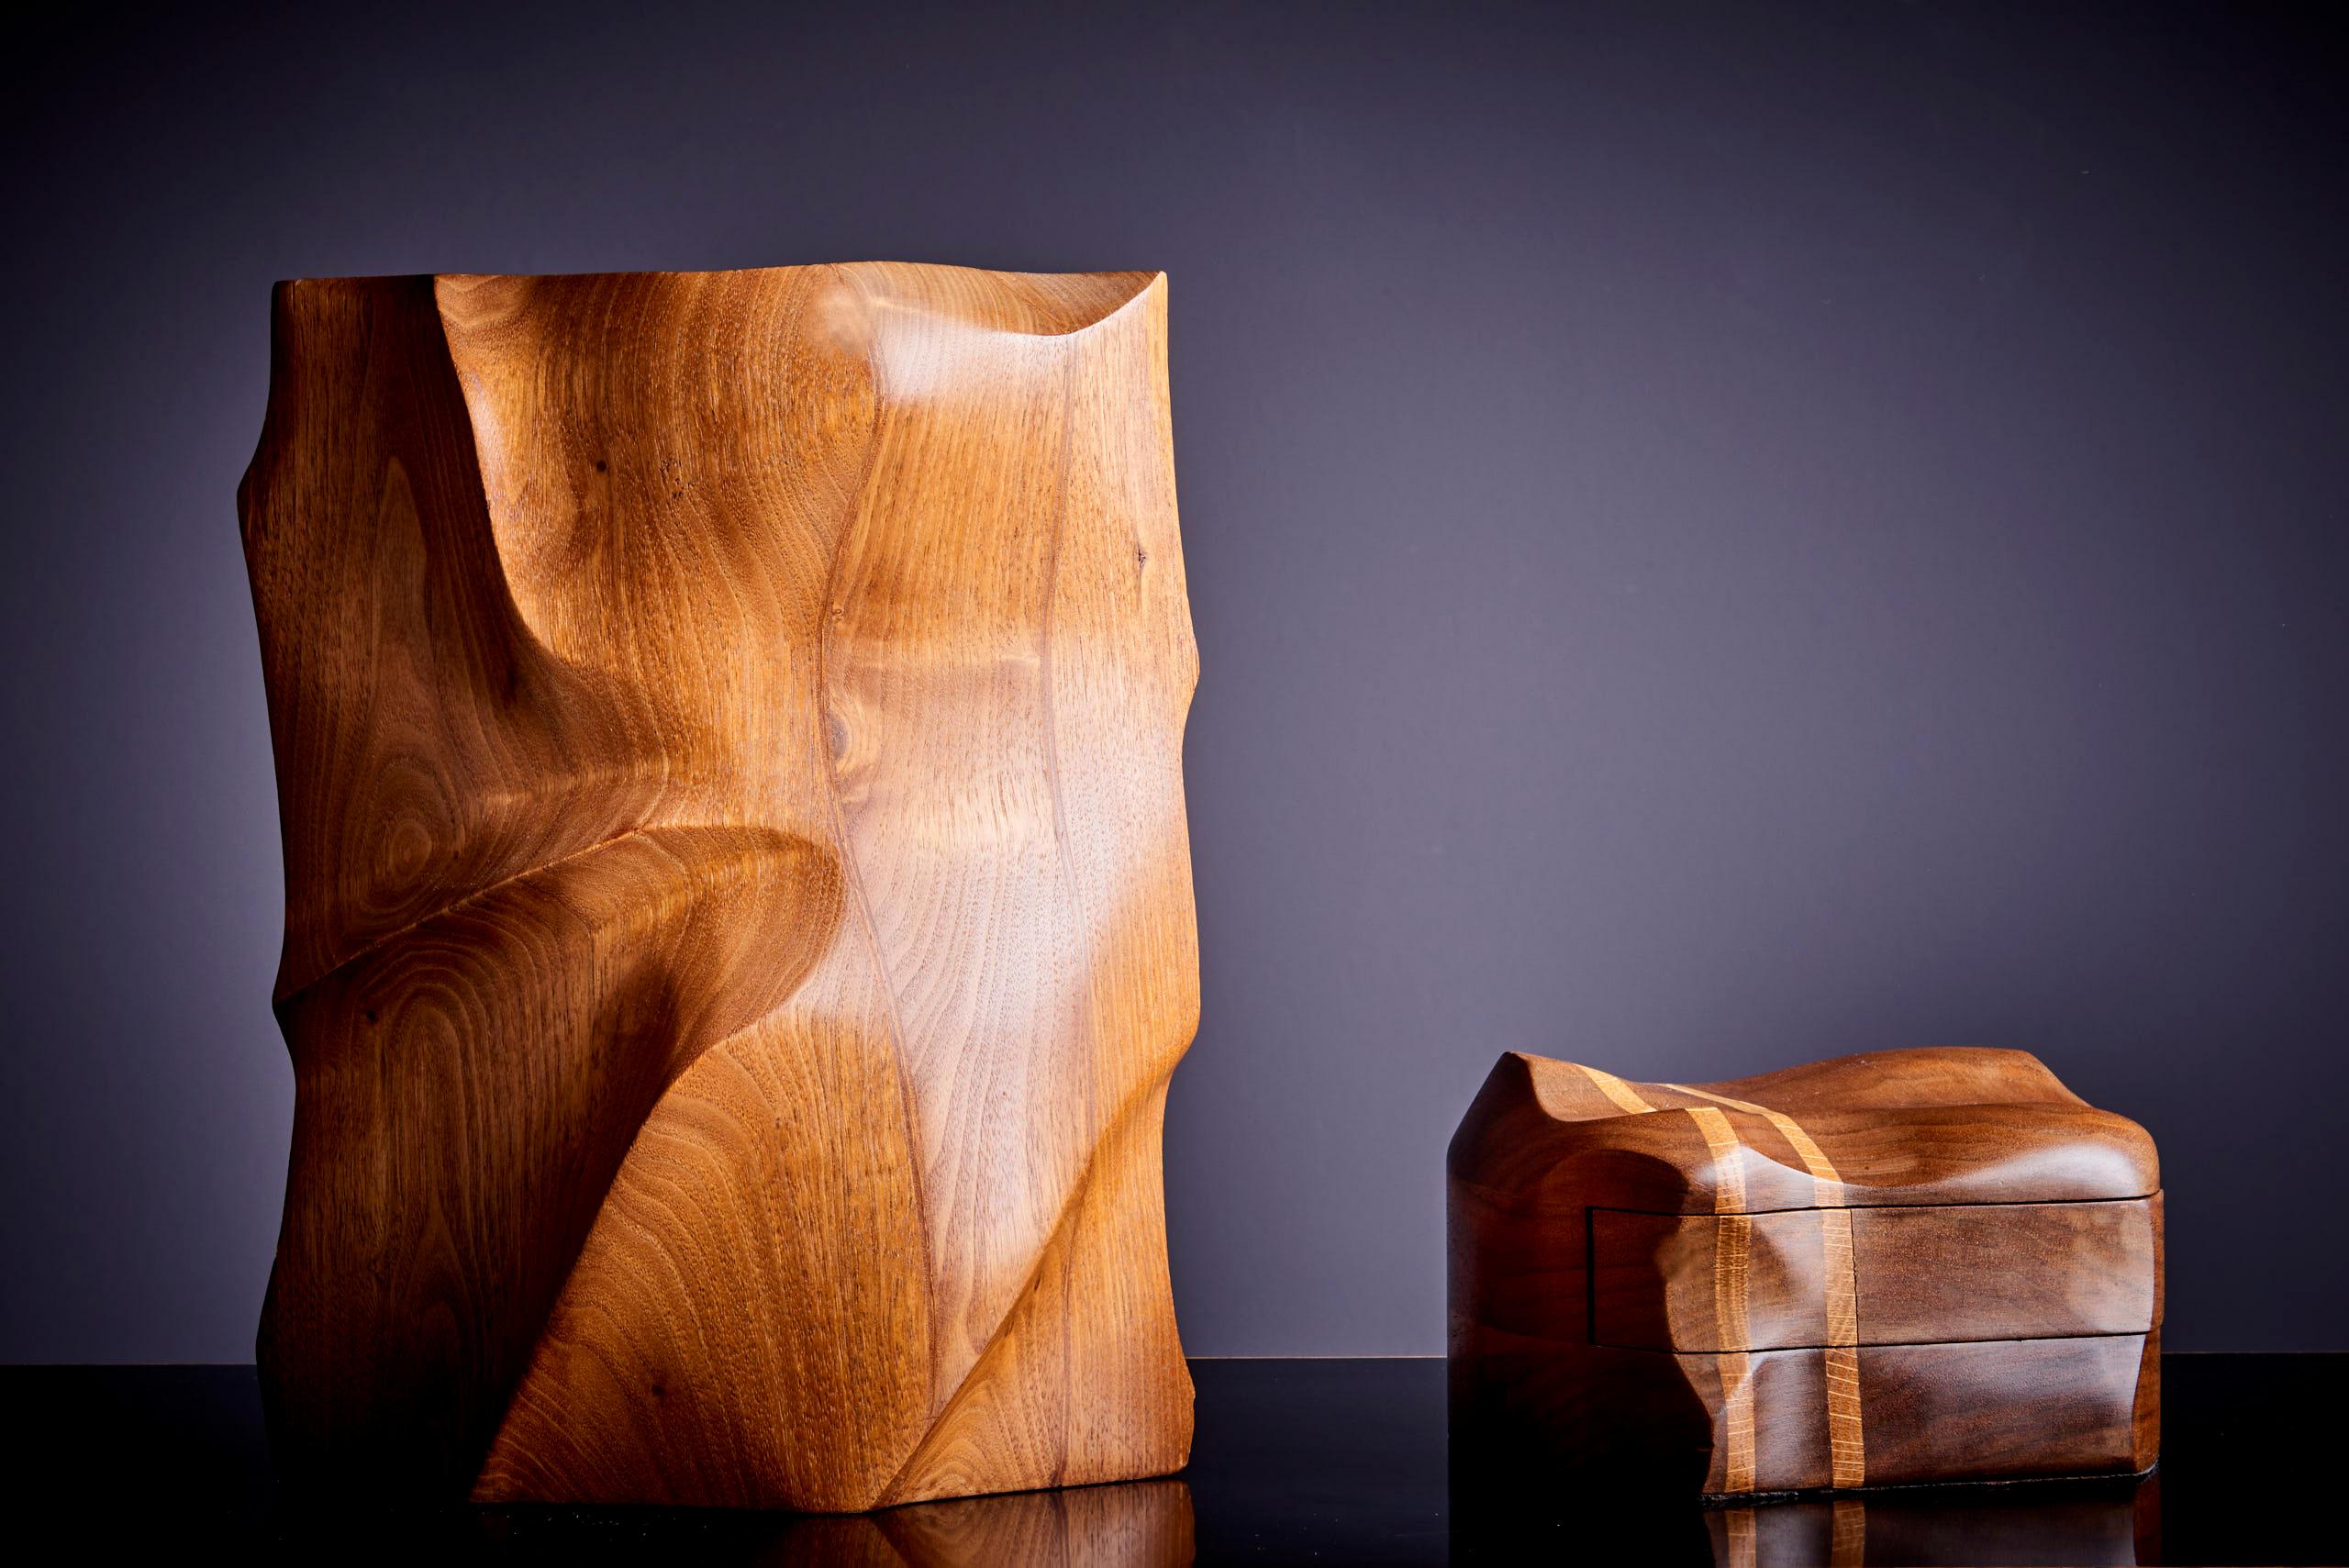 Ensemble unique de deux pièces du Studio de Charles Kaplan.
Qualité haut de gamme absolue. Le vase est marqué. Les mesures indiquées correspondent au vase.

